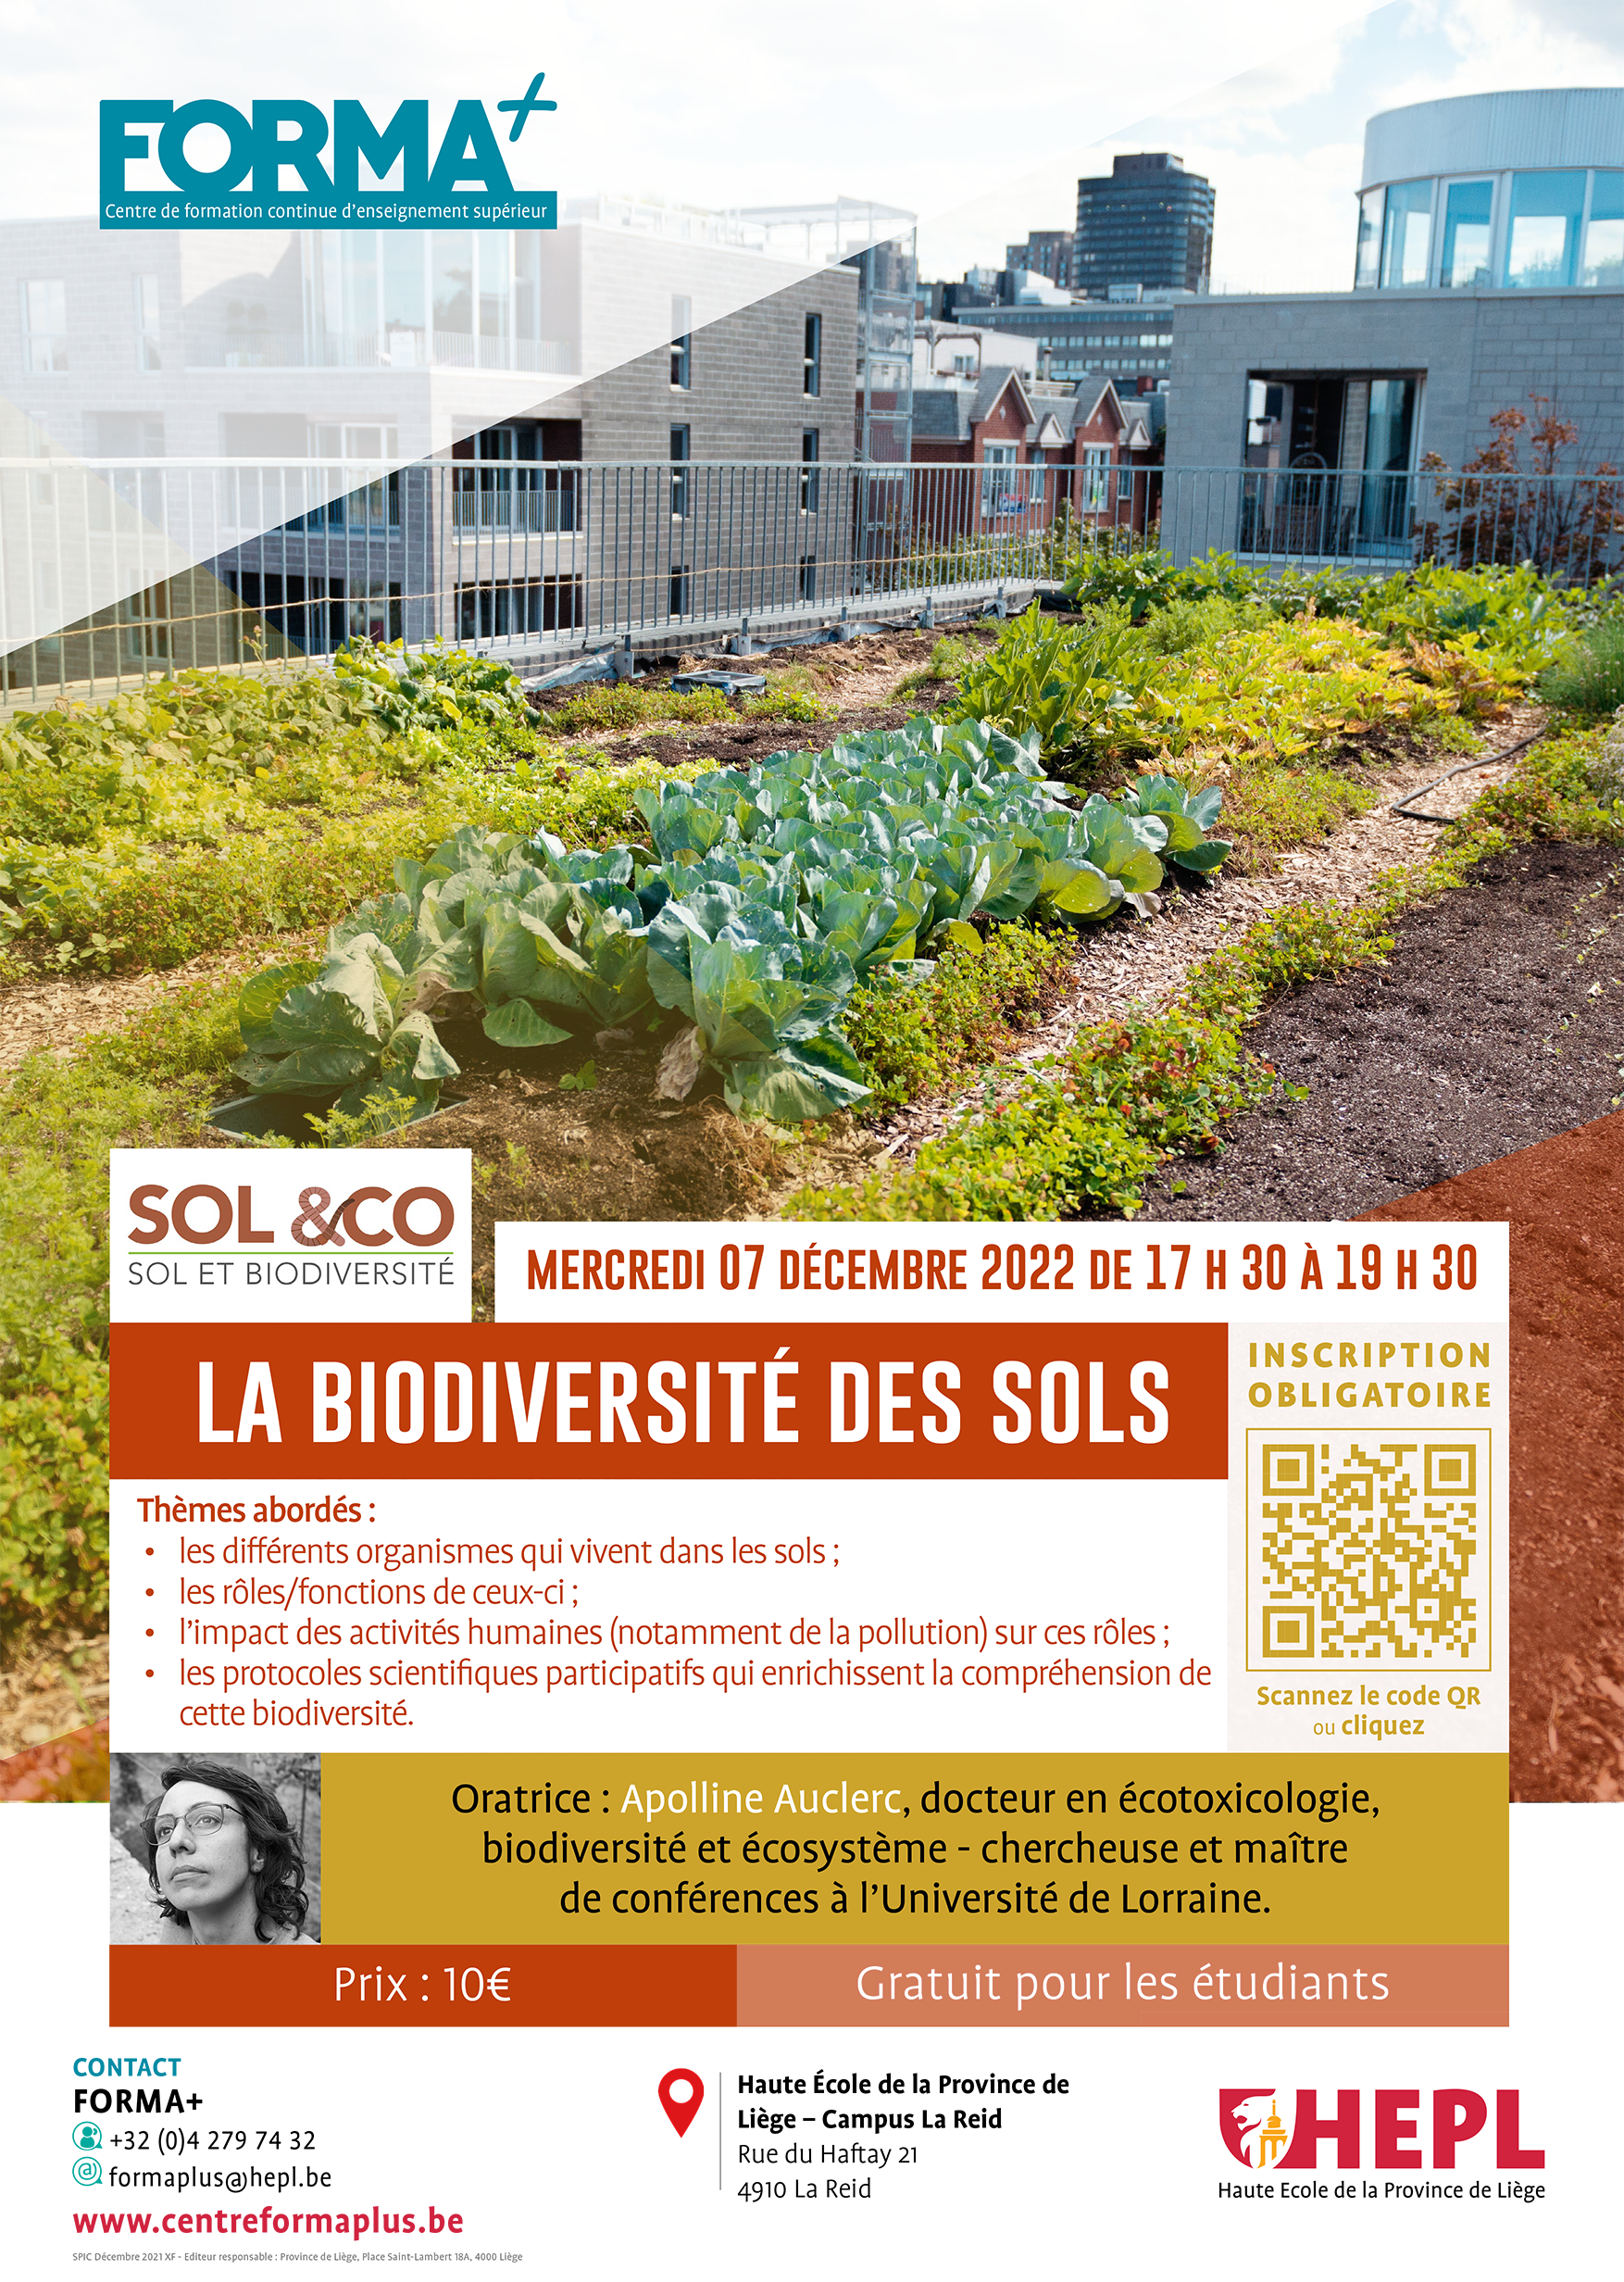 HEPL_Conférence_Biodiversité_des_sols